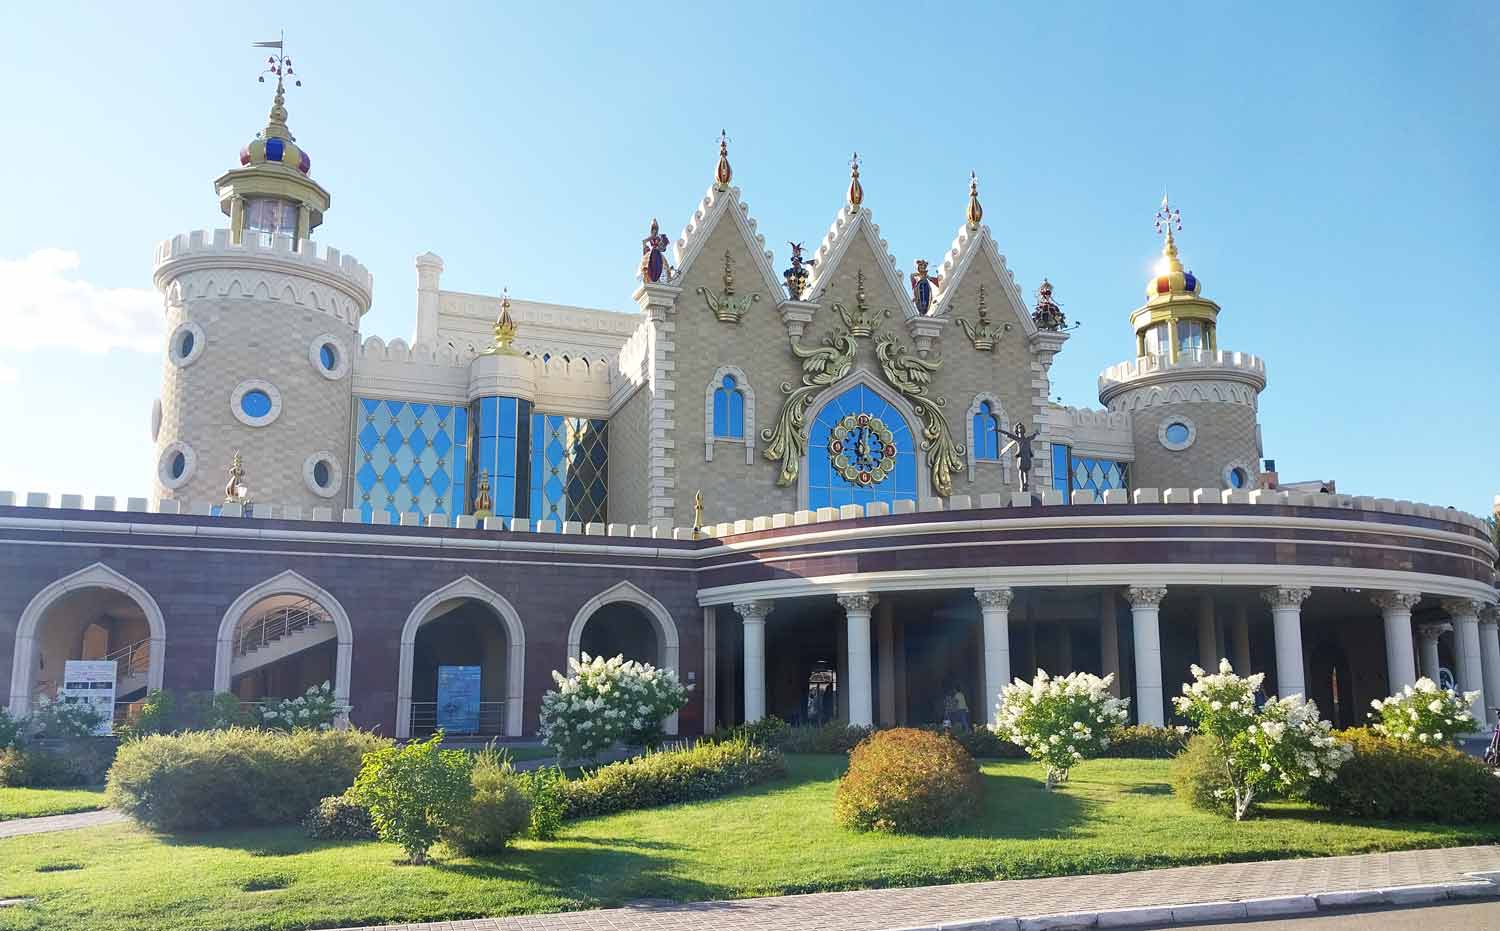 Театр кукол Казани “Экият” внешне ошеломительно грандиозной архитектурой, показывает свое величие.